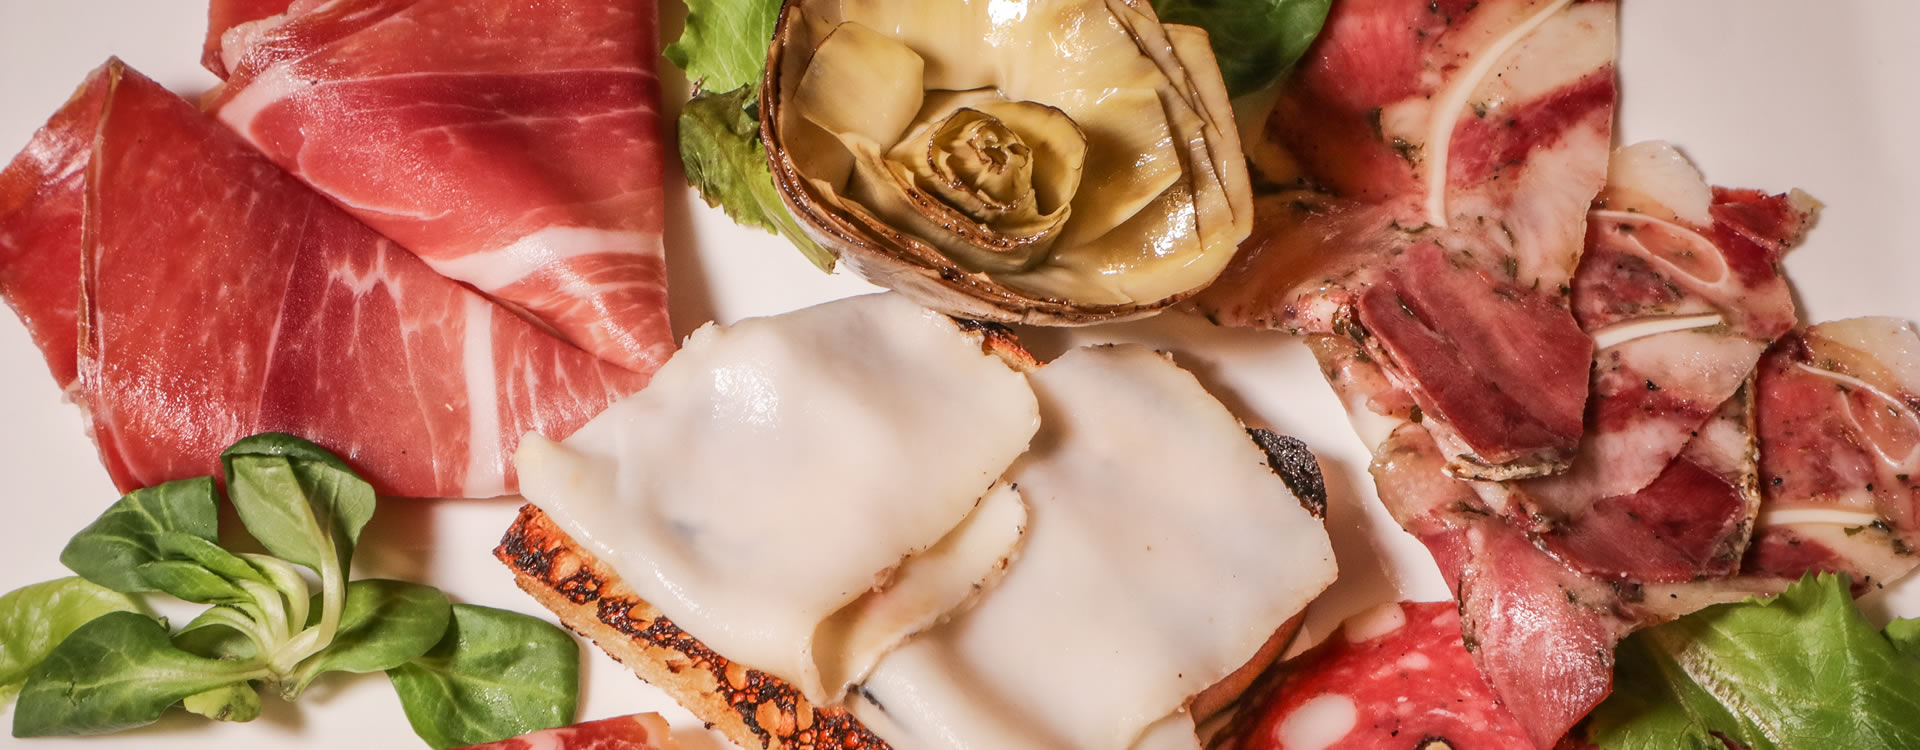 Ristorante Siena centro storico cucina tradizionale toscana